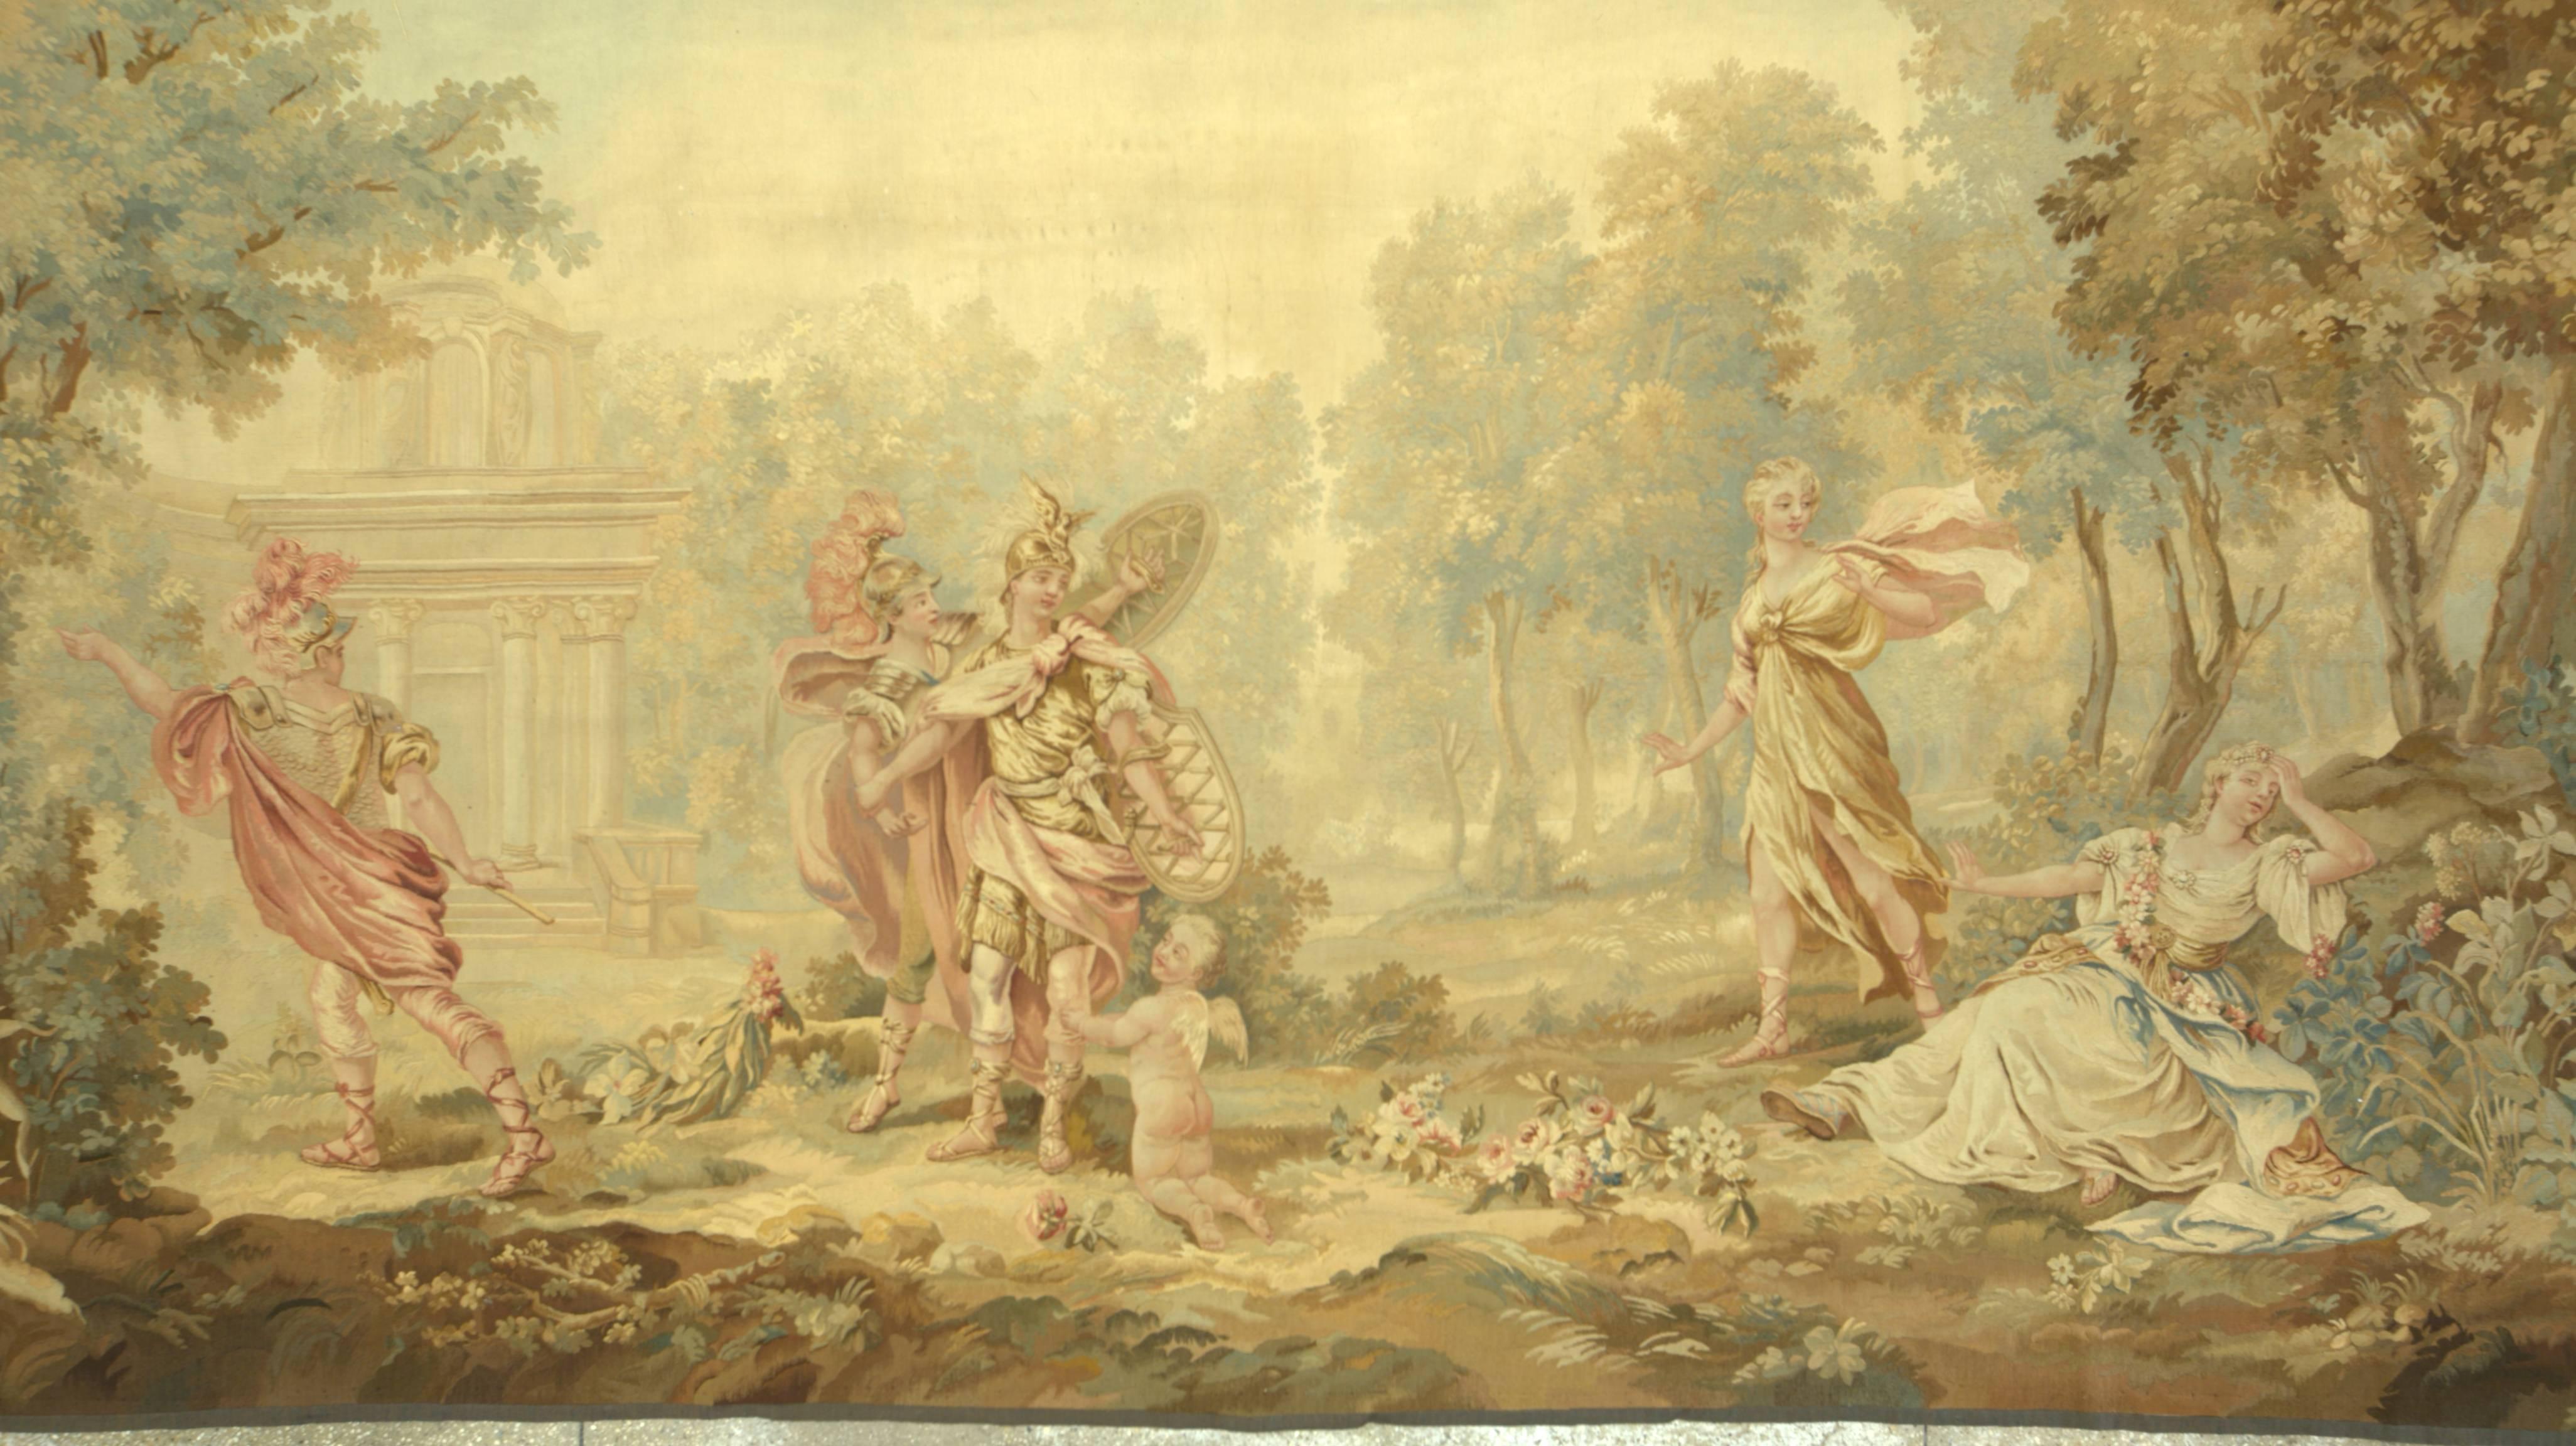 Une tapisserie horizontale de taille rare du début du 19ème siècle/possiblement du 18ème siècle avec ce qui semble être quelques guerriers romains s'amusant dans un cadre pittoresque. La taille est originale, l'intention étant de couvrir un très